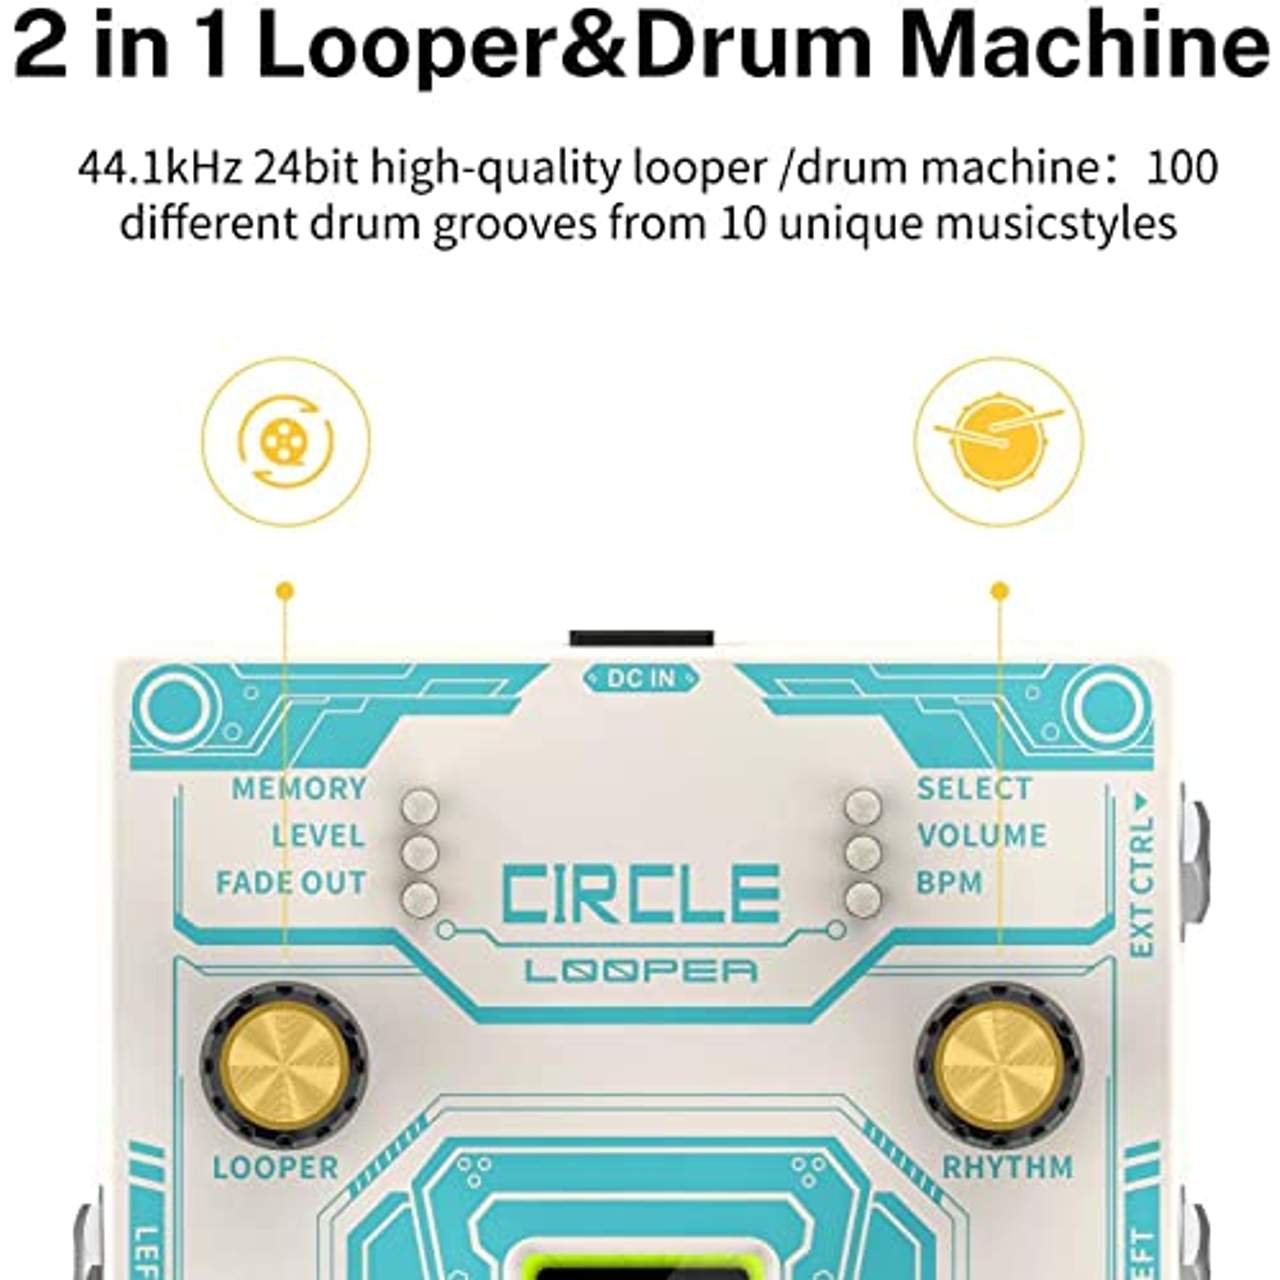 Donner Circle Looper Pedal